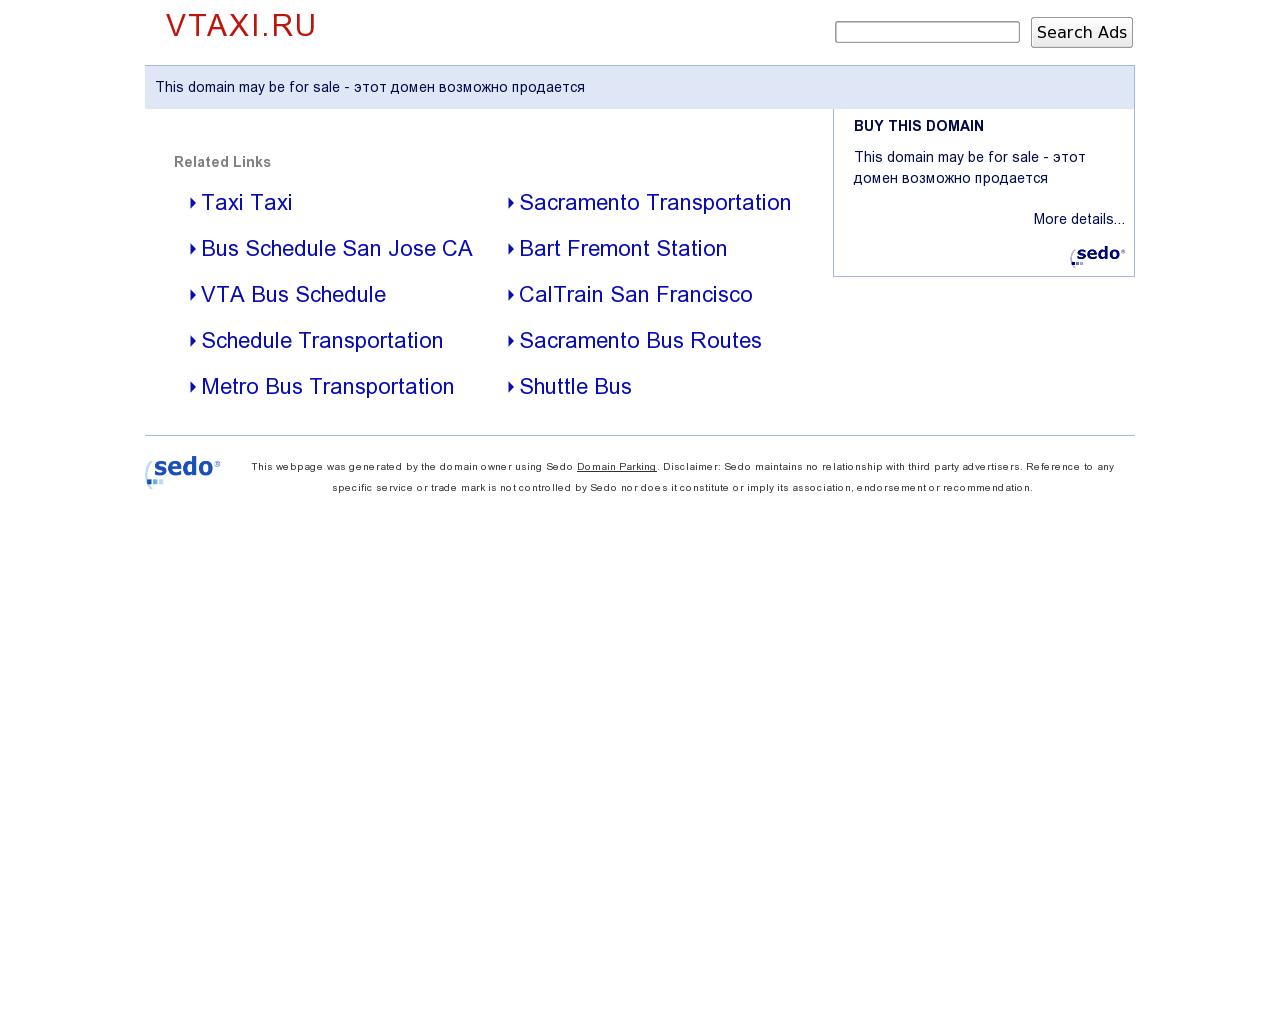 Изображение сайта vtaxi.ru в разрешении 1280x1024